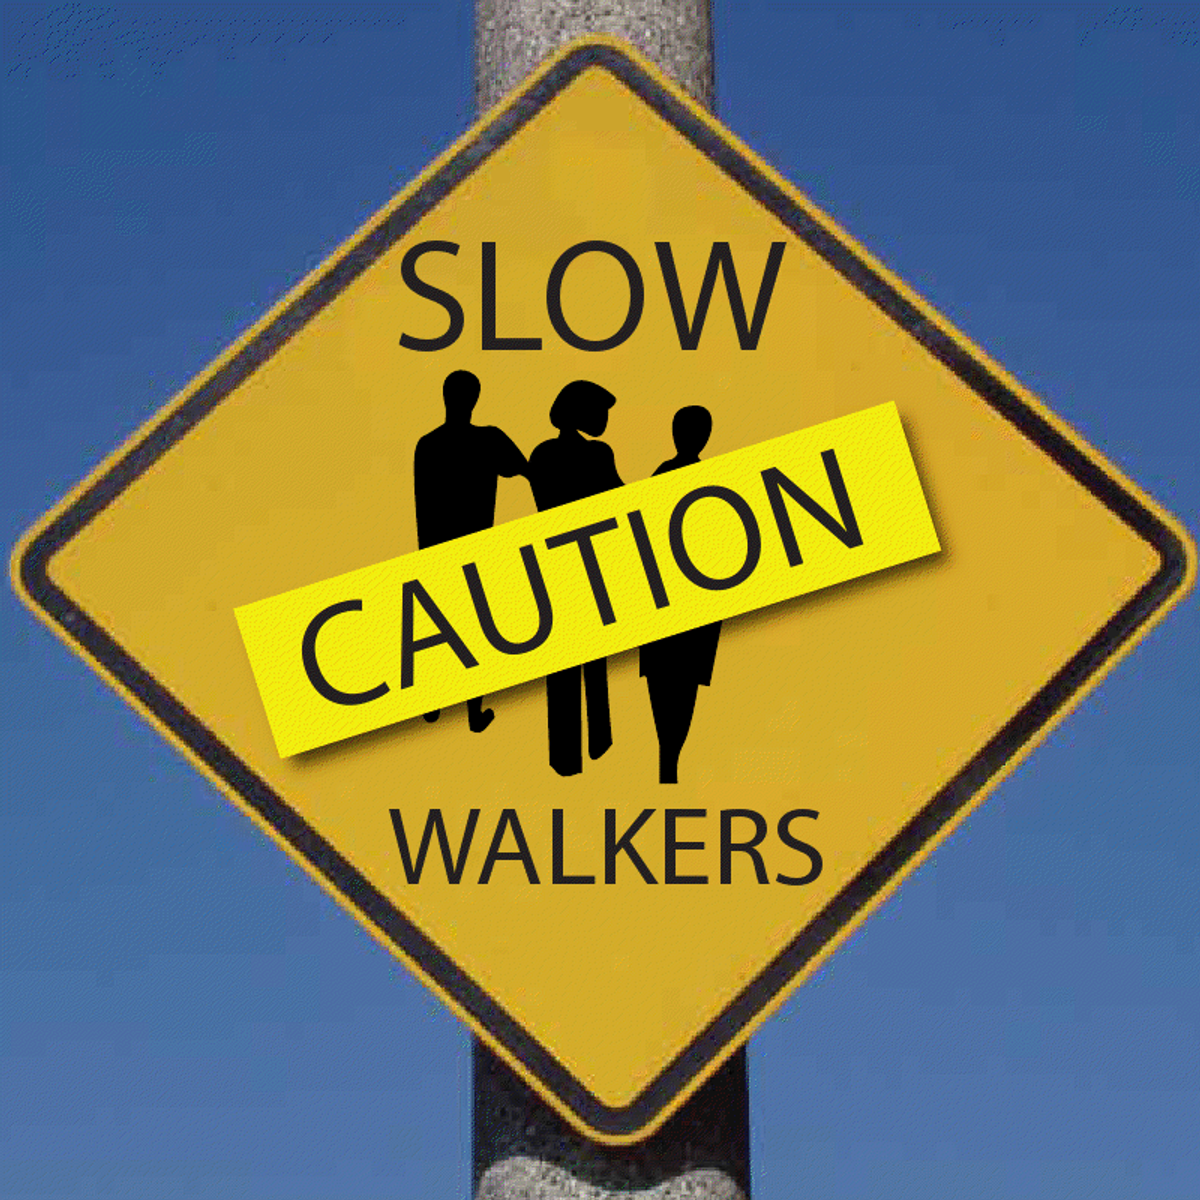 Dear People Who Walk Slow